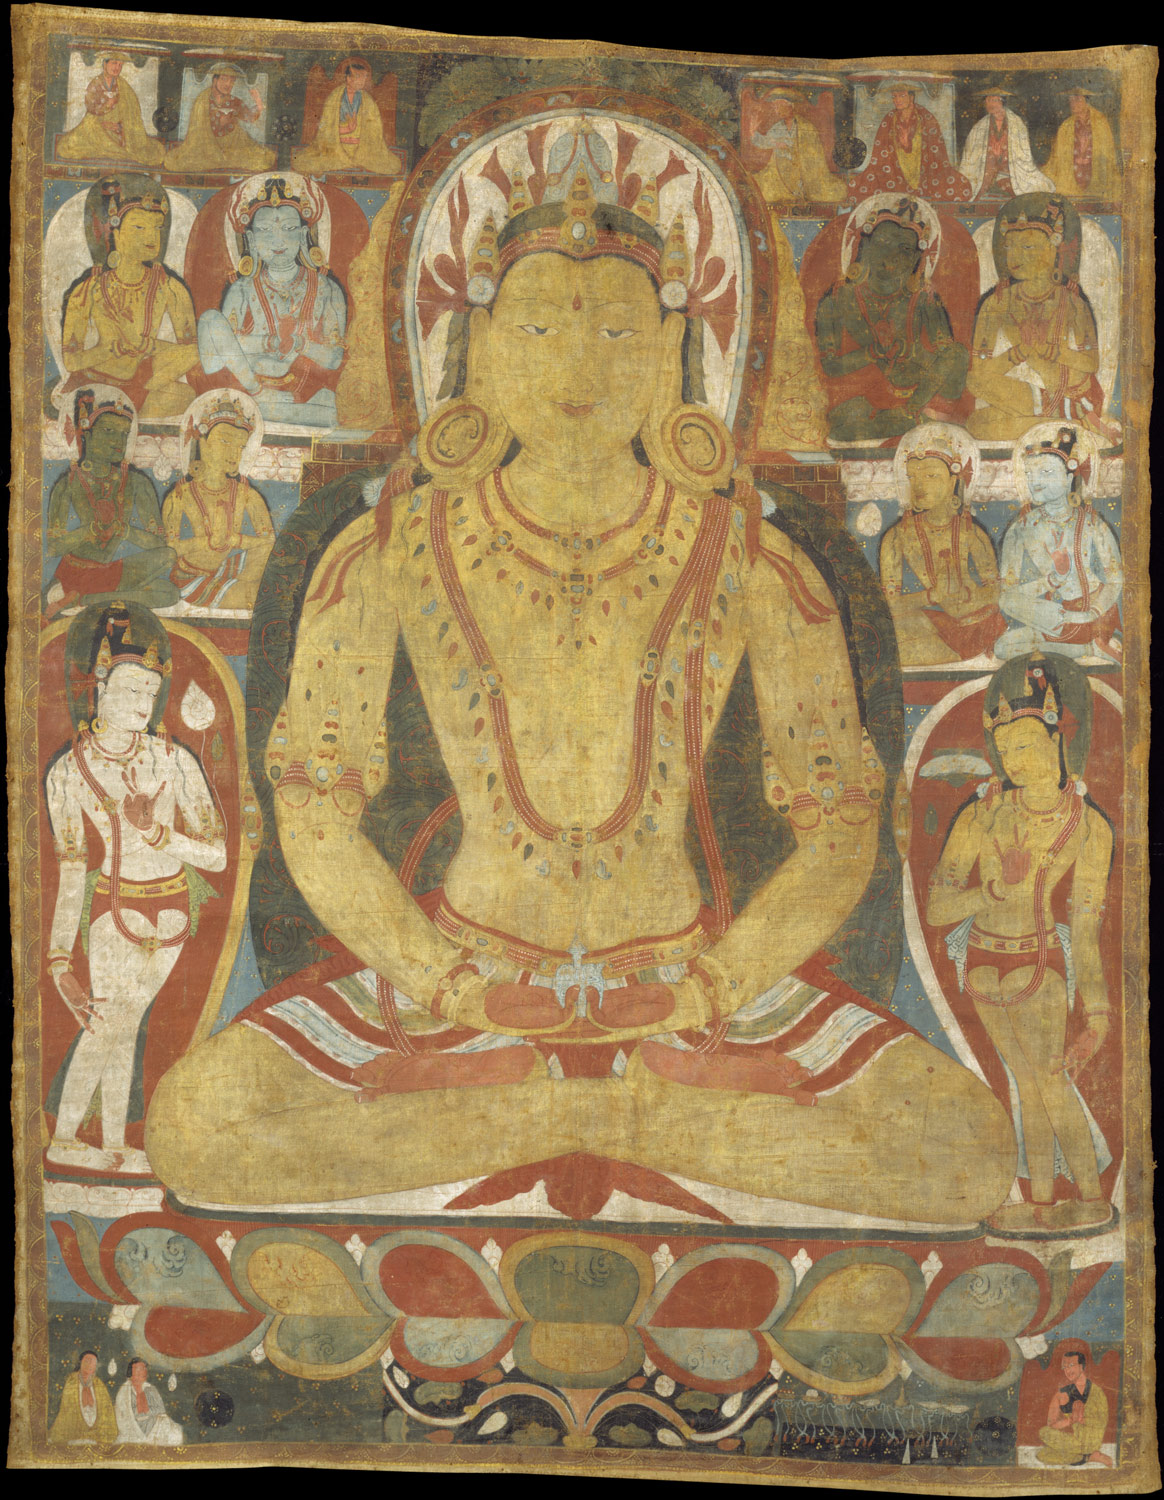 The Buddha Amitayus attended by bodhisattvas